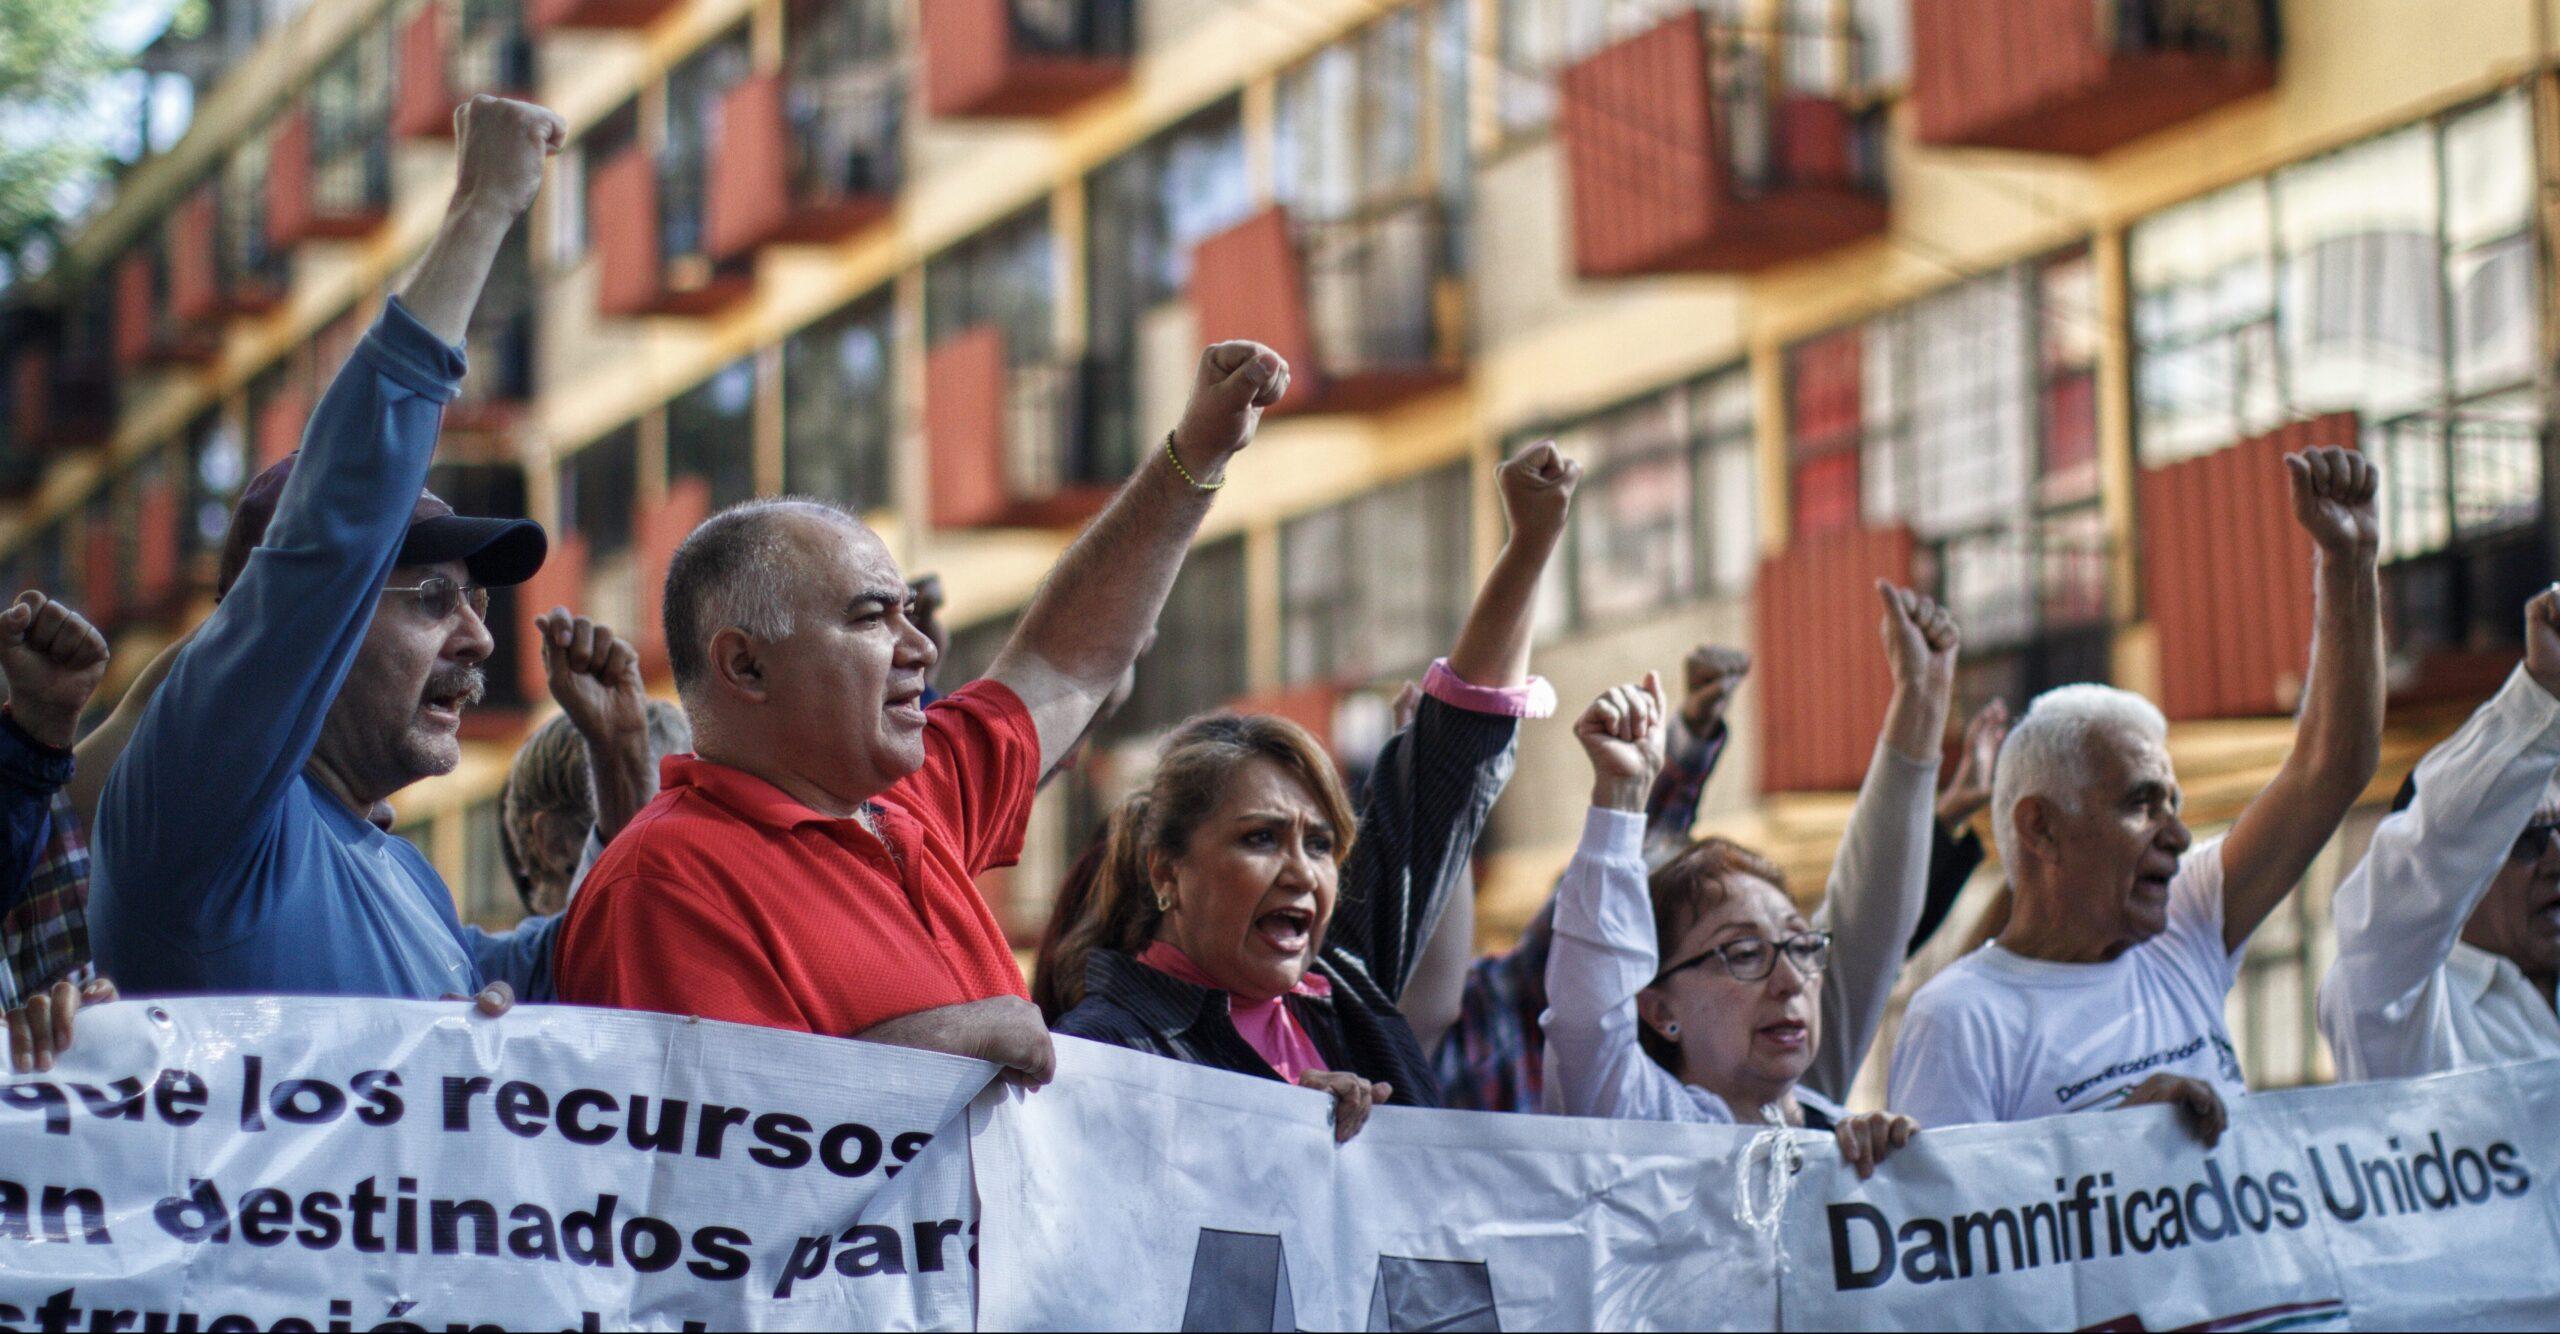 #SomosDamnificados: a 8 meses del 19S, vecinos del Multifamiliar Tlalpan piden apoyo en redes